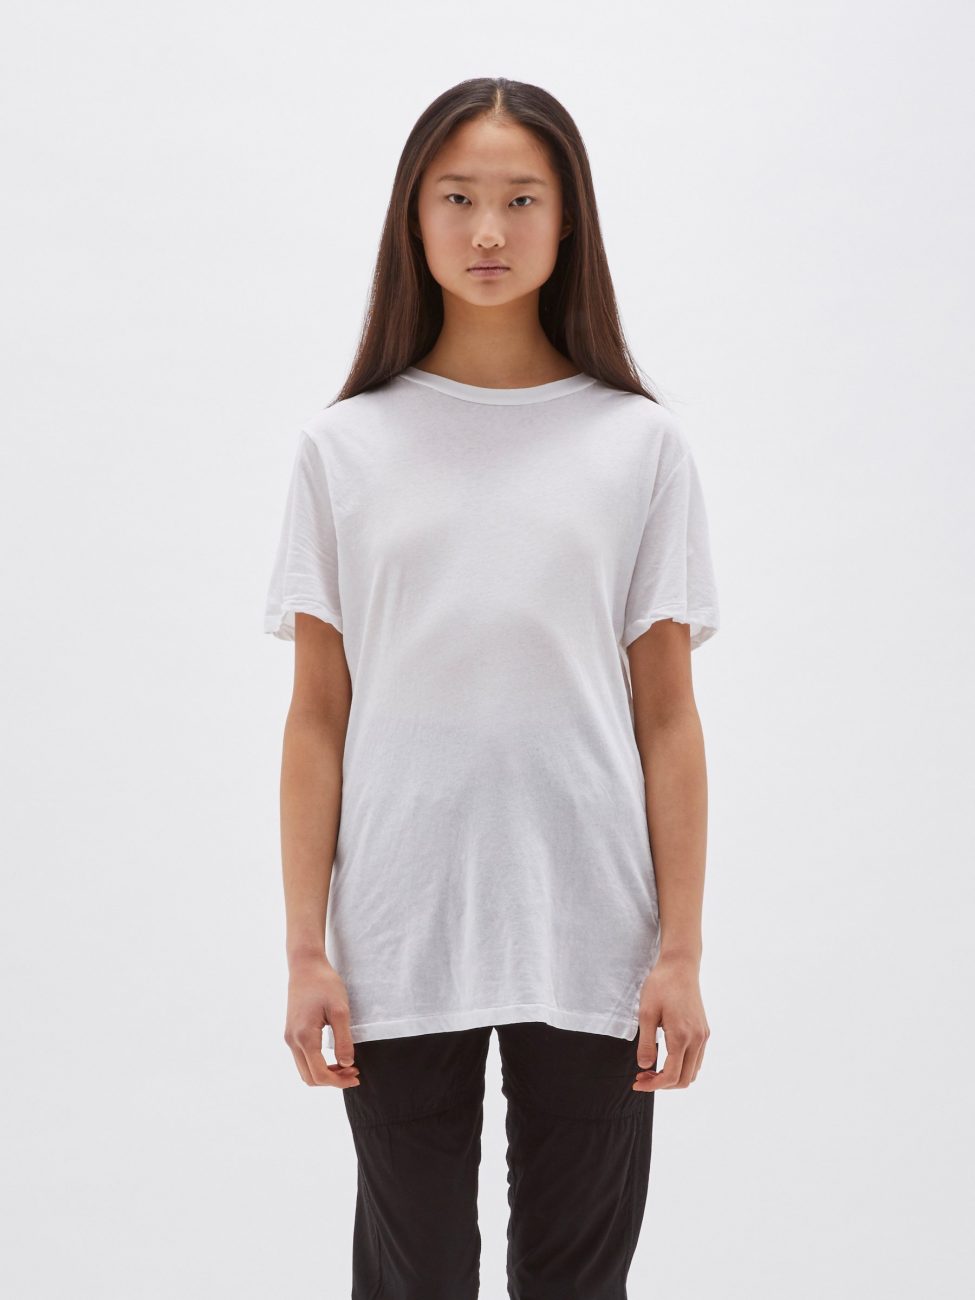 classic-vintage-tshirt-white1-975x1300